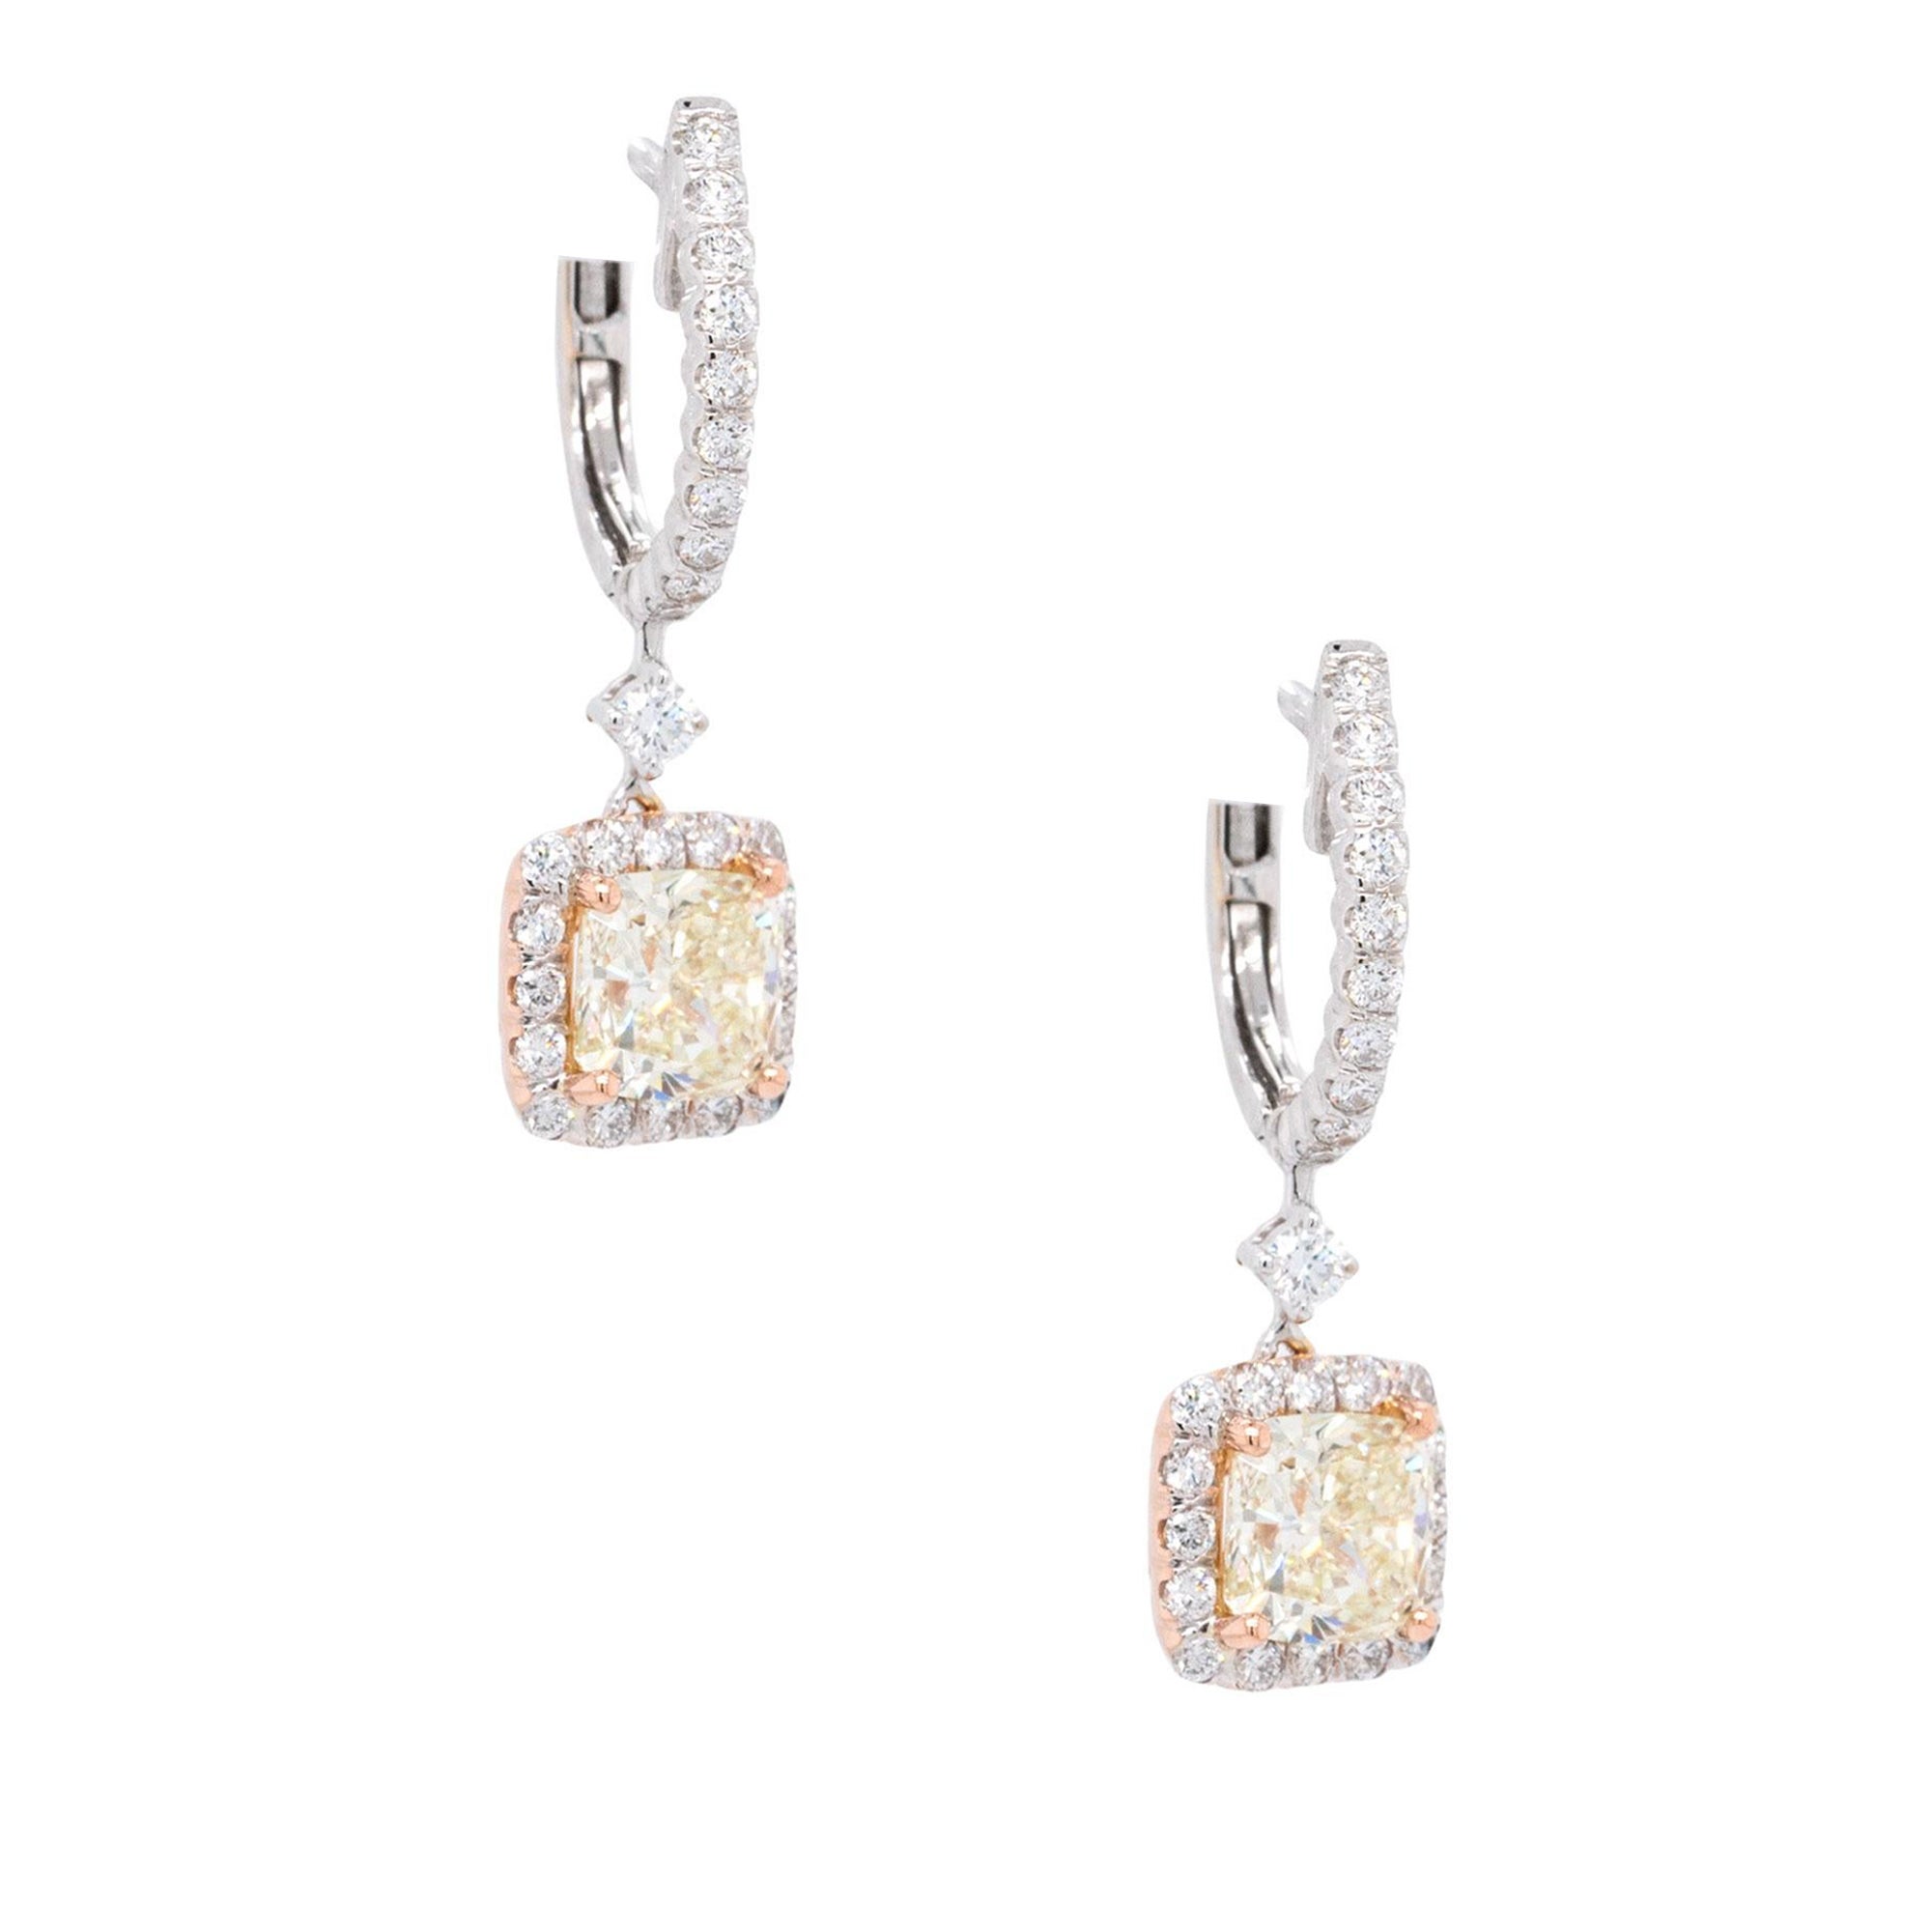 2 Carat GIA Certified Cushion Cut Diamond Dangle Earrings For Sale